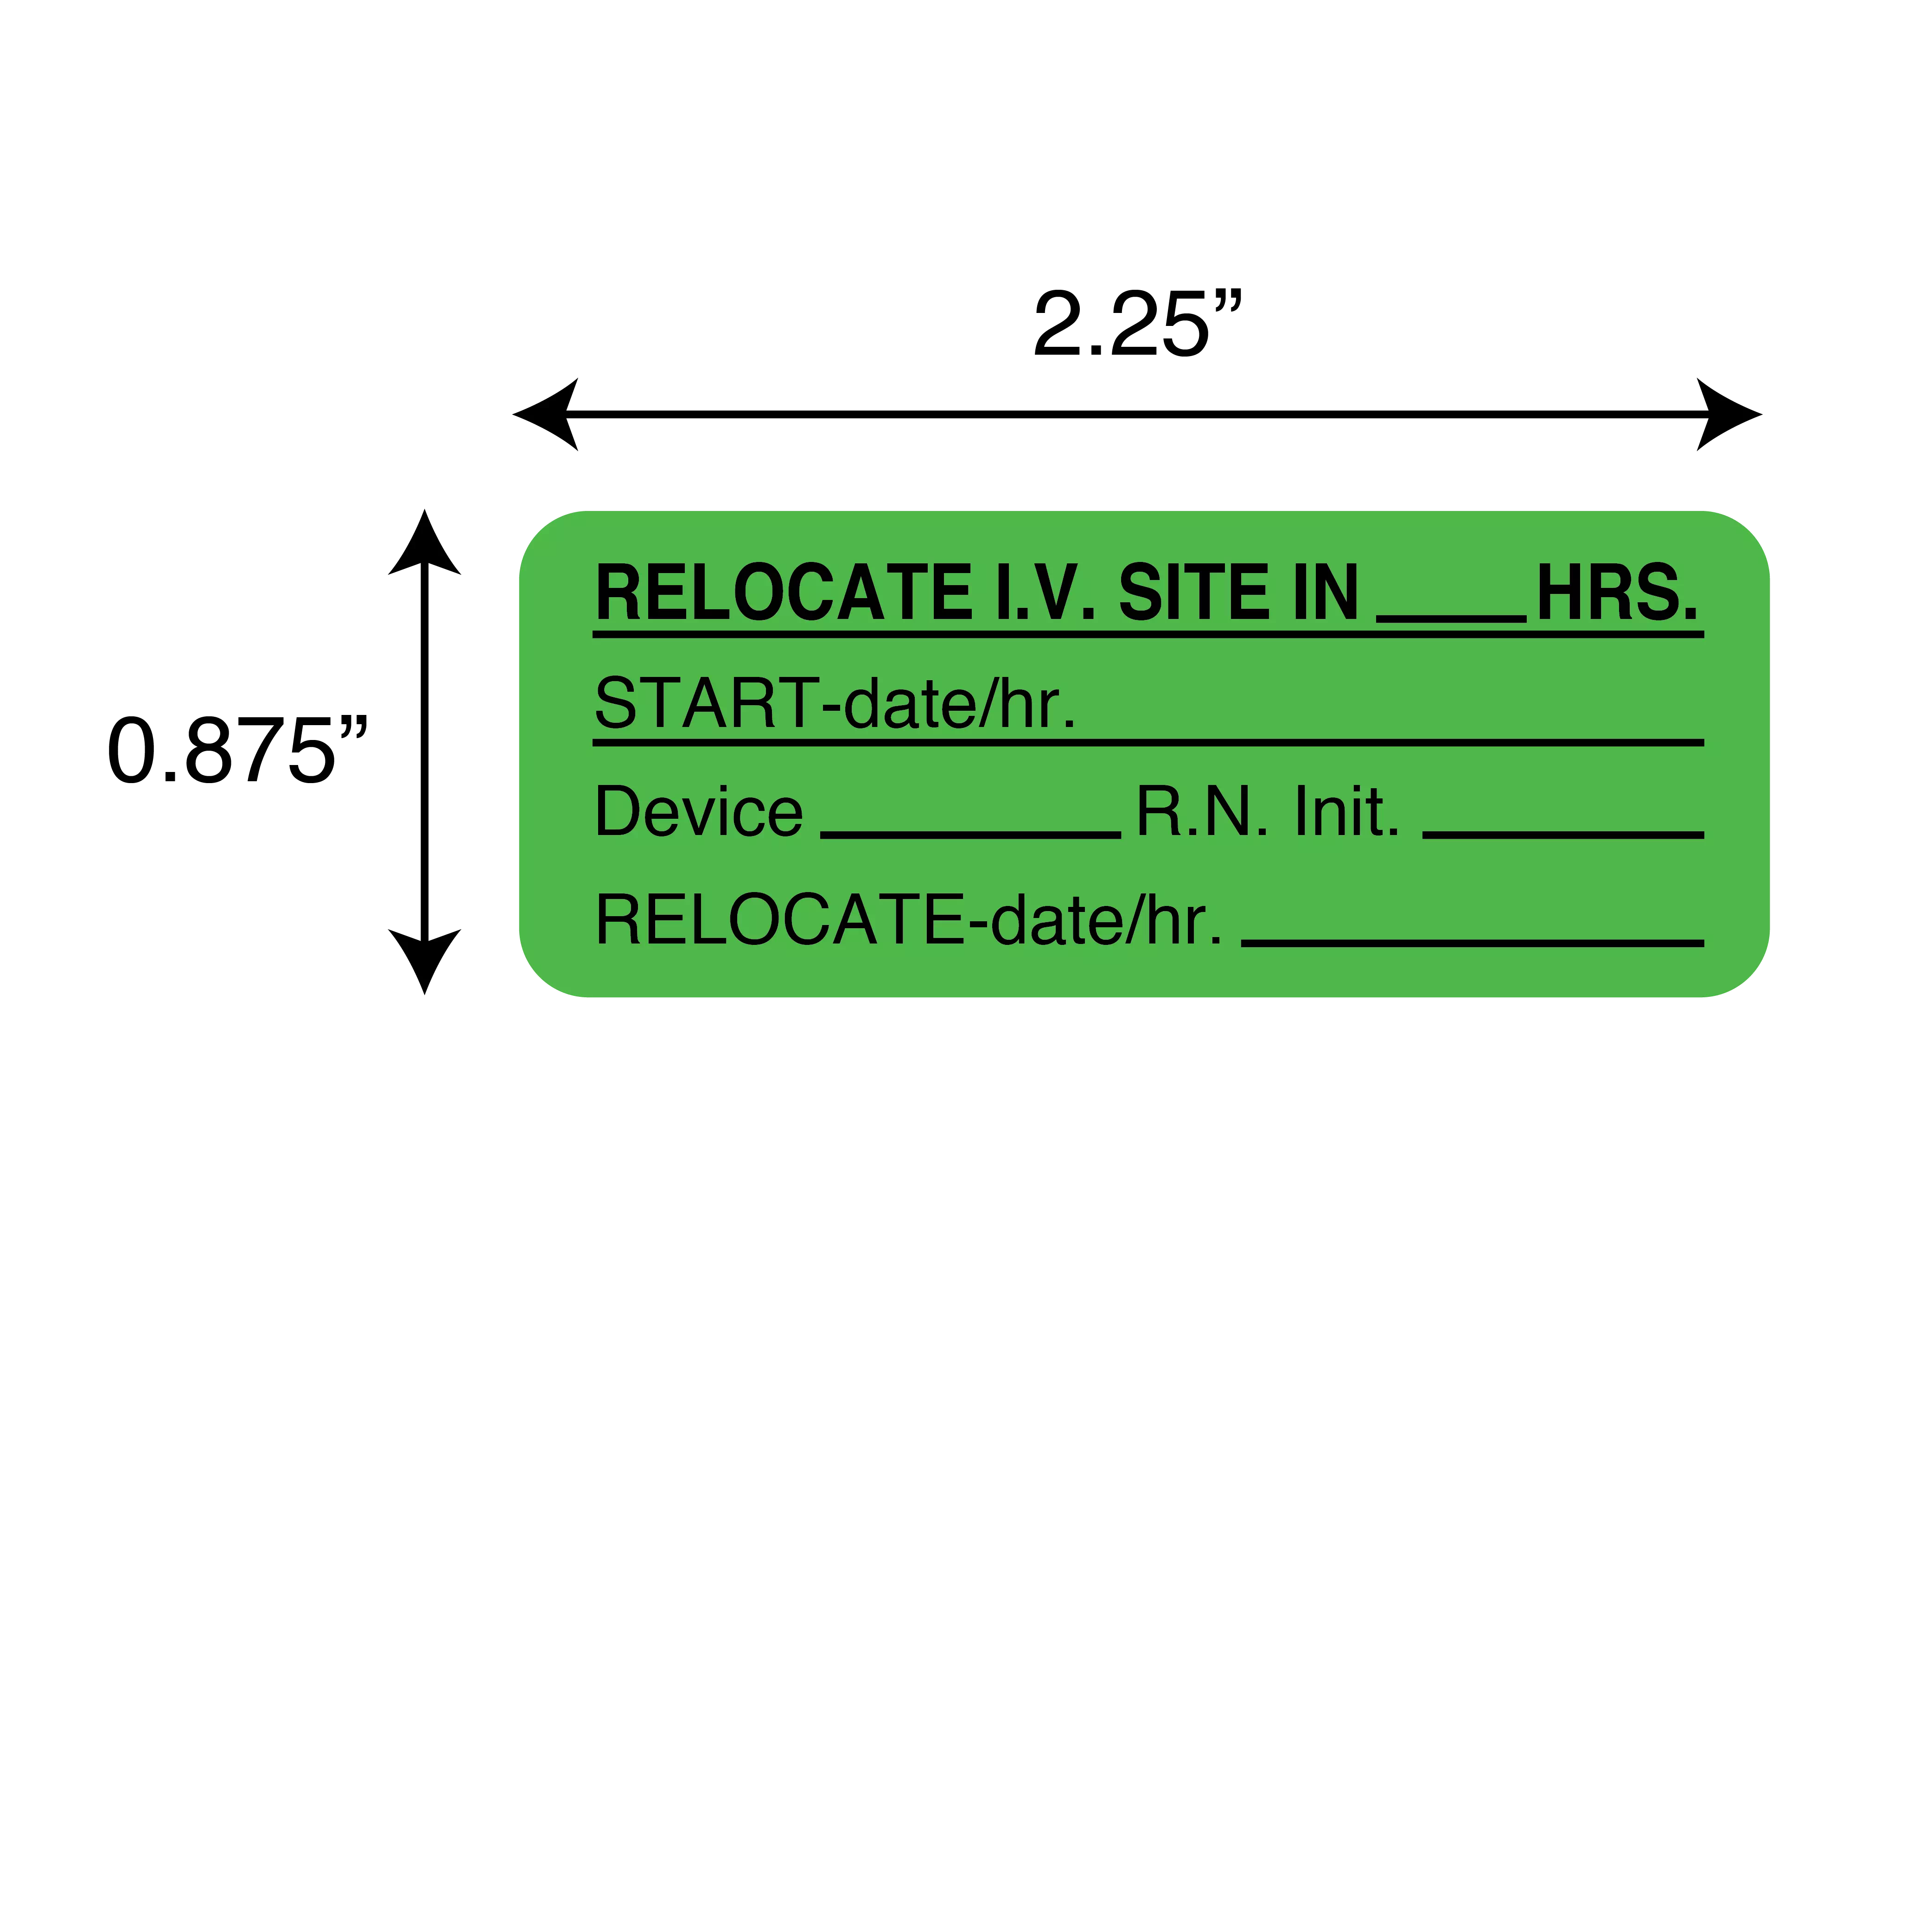 Relocate I.V. Site